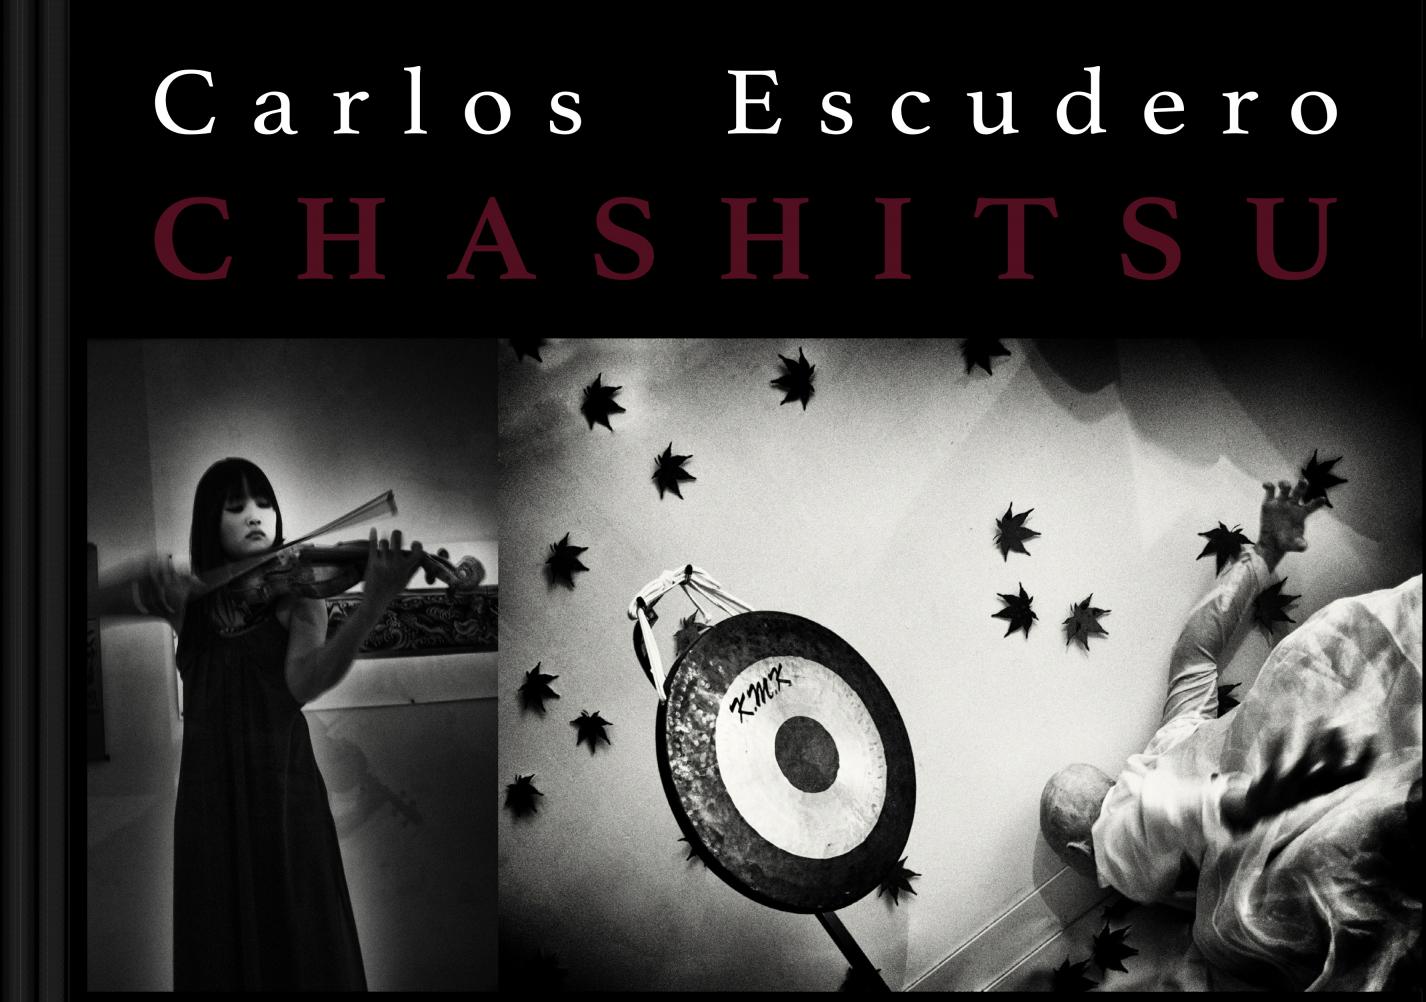 "Chashitsu" photobook carlosescuderofoto.com (2014) - Carlos Escudero